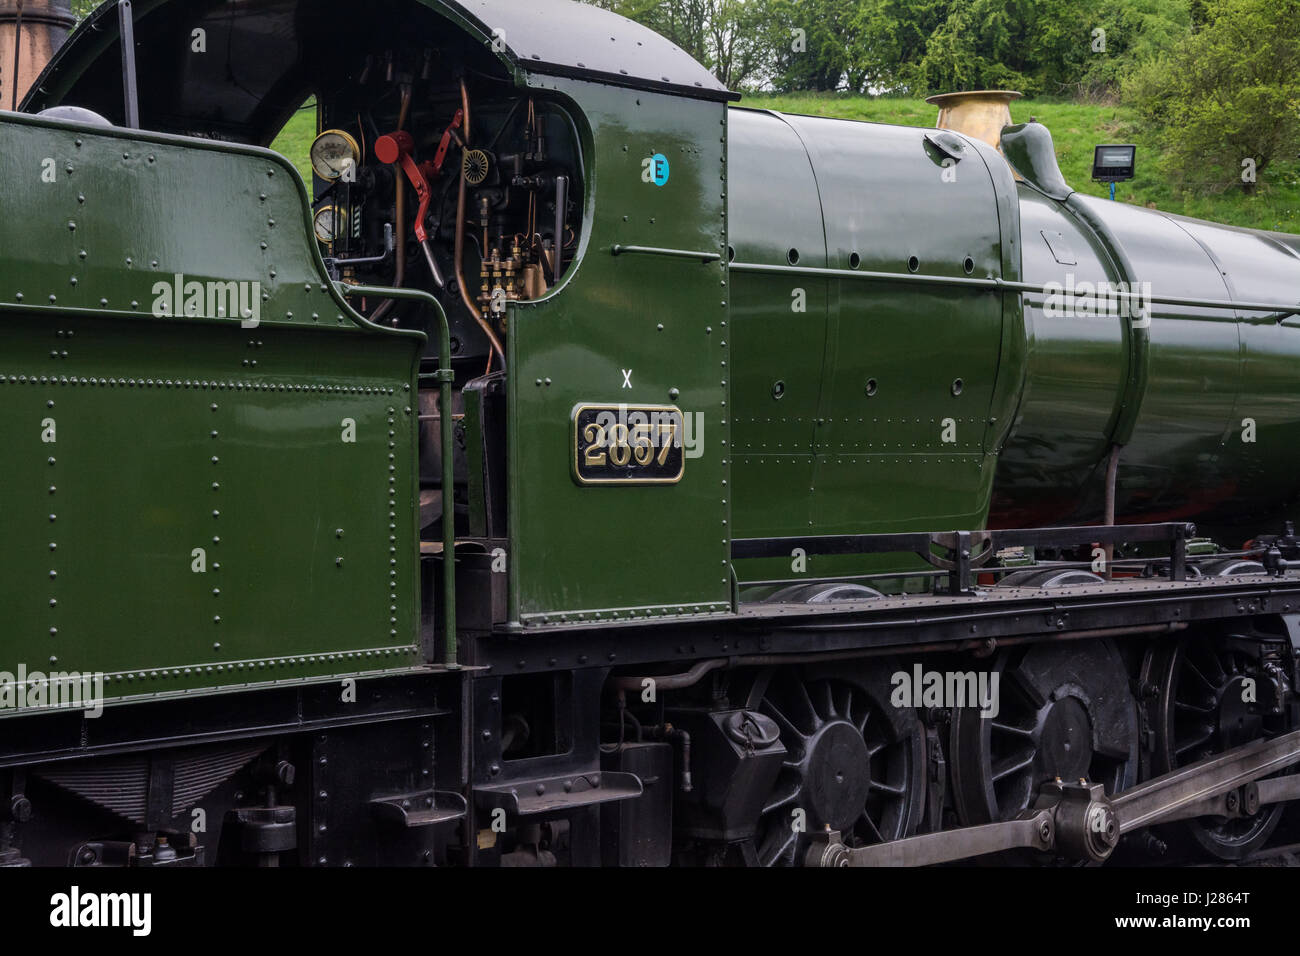 Treni a vapore a Bridgnorth stazione ferroviaria, Shropshire, West Midlands, Regno Unito. Severn Valley Railway. Foto Stock